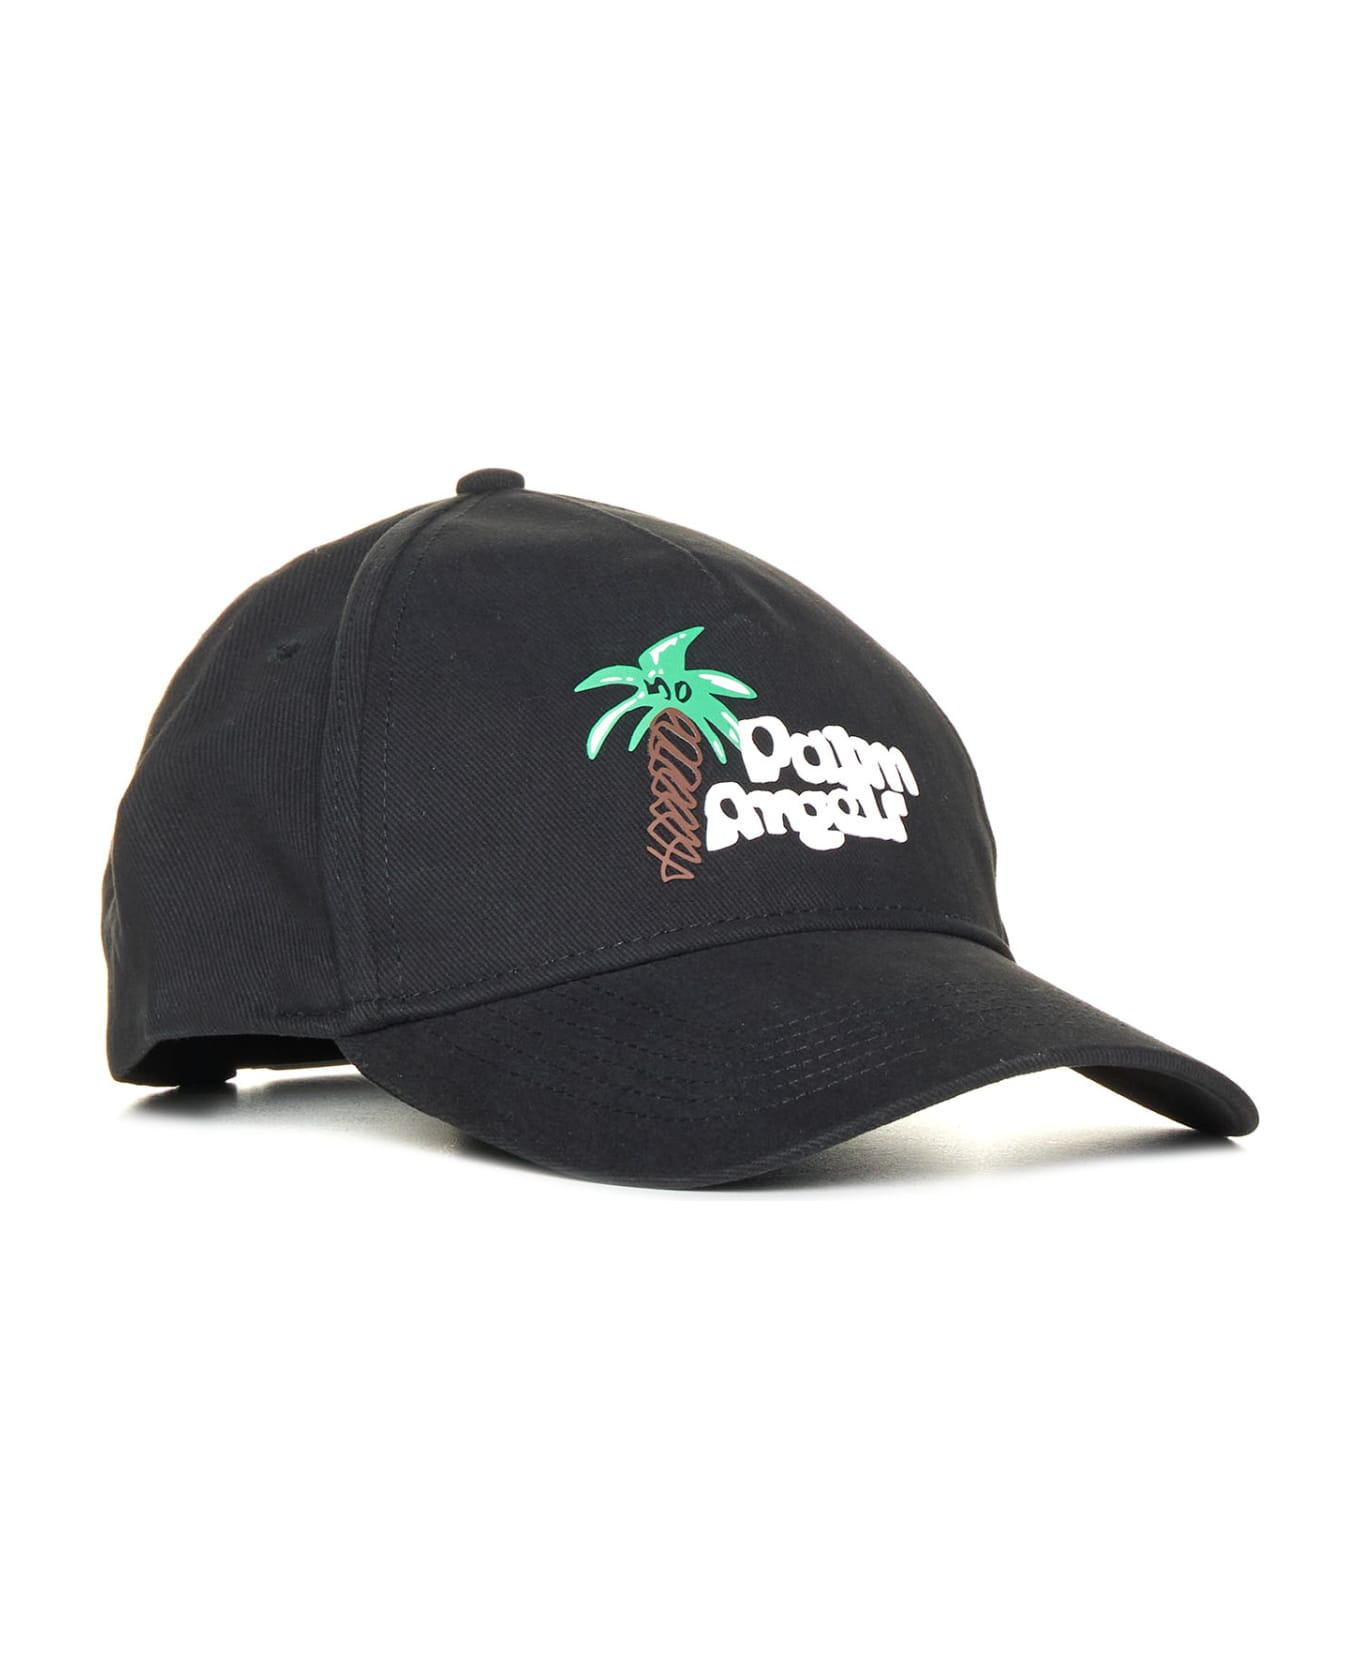 Palm Angels Sketchy Baseball Cap - Black